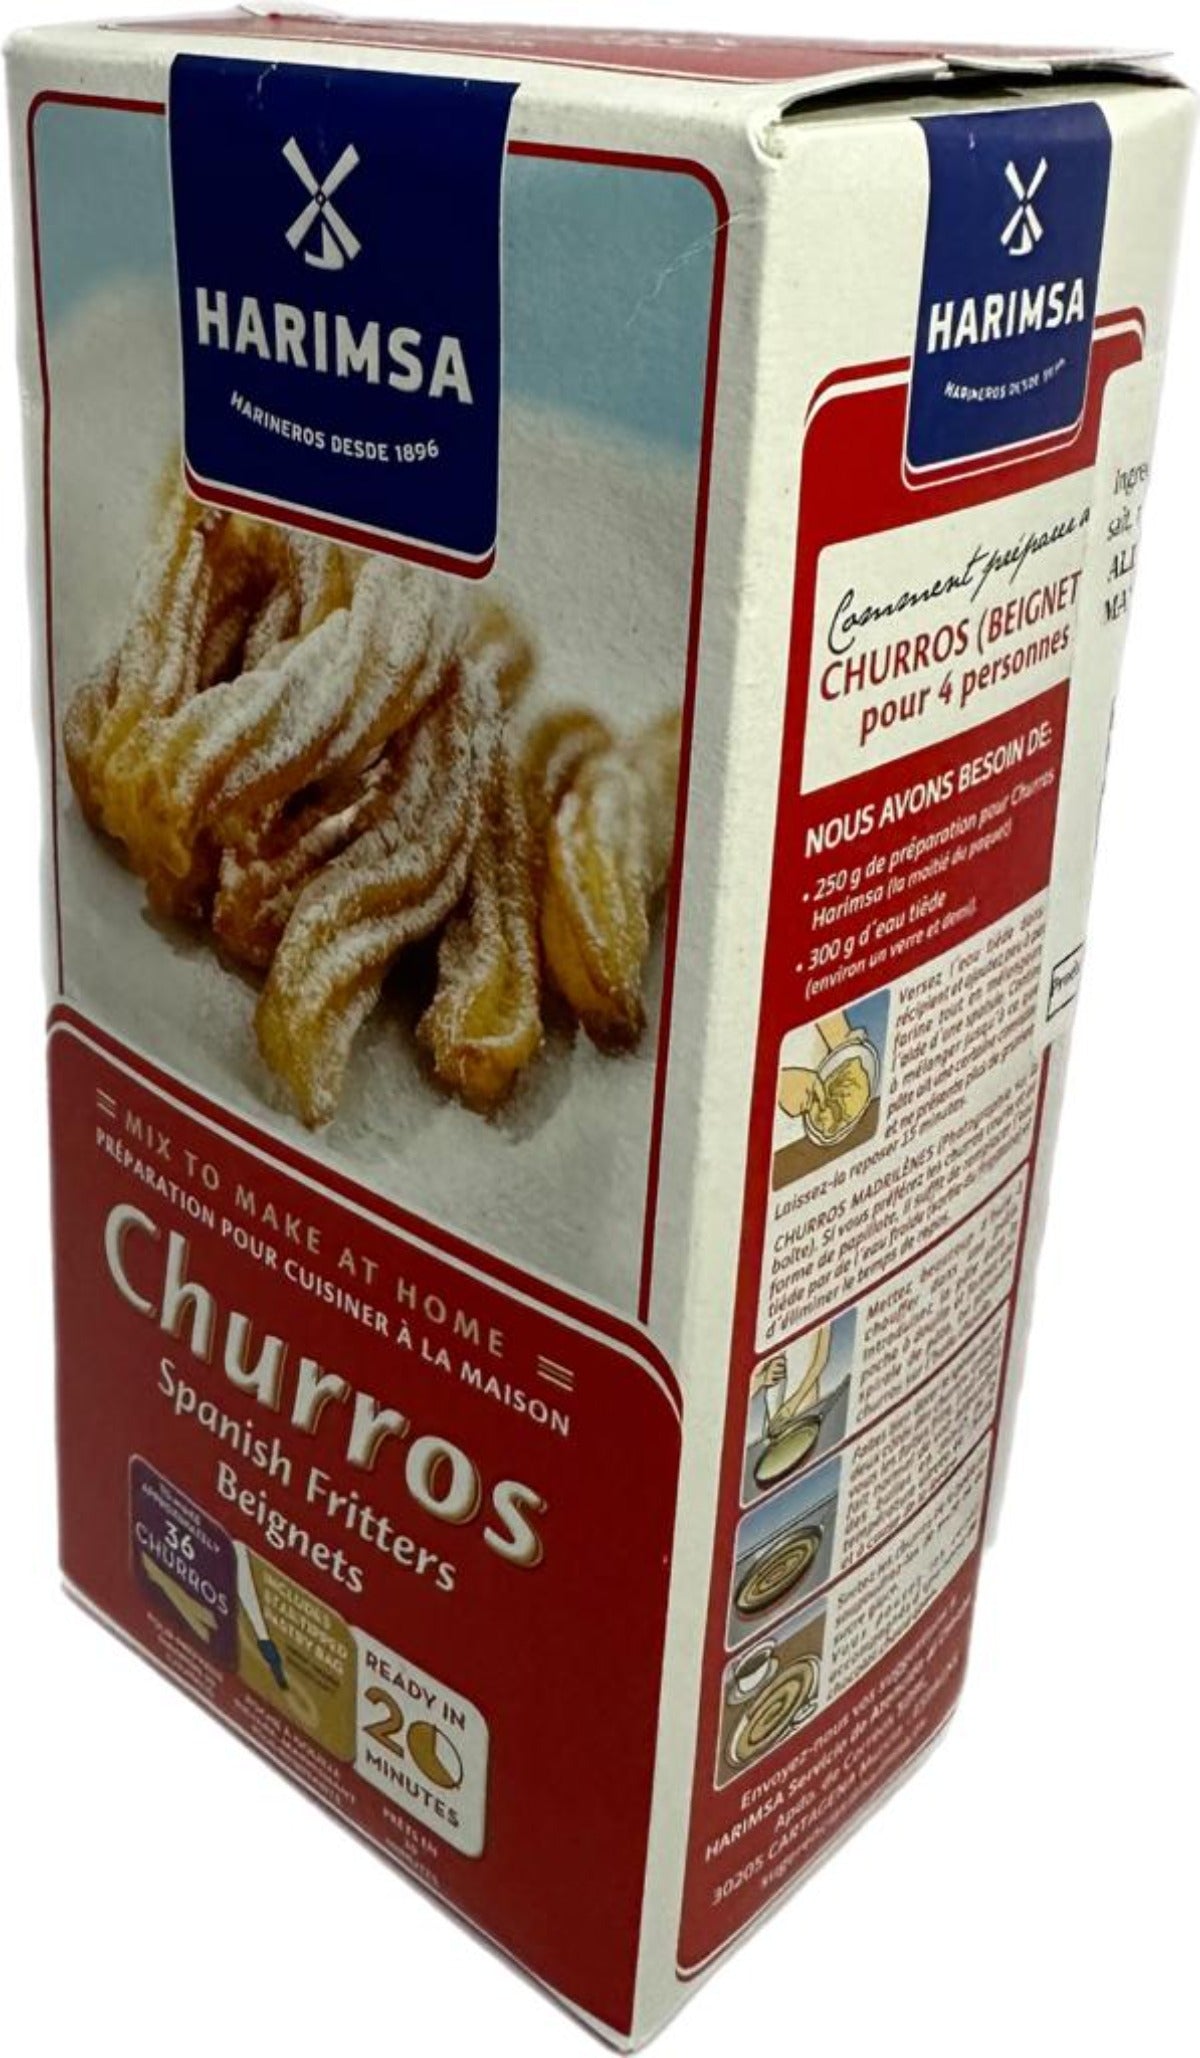 Harimsa Spanish Churro Flour 500g - 4 Pack 2kg total